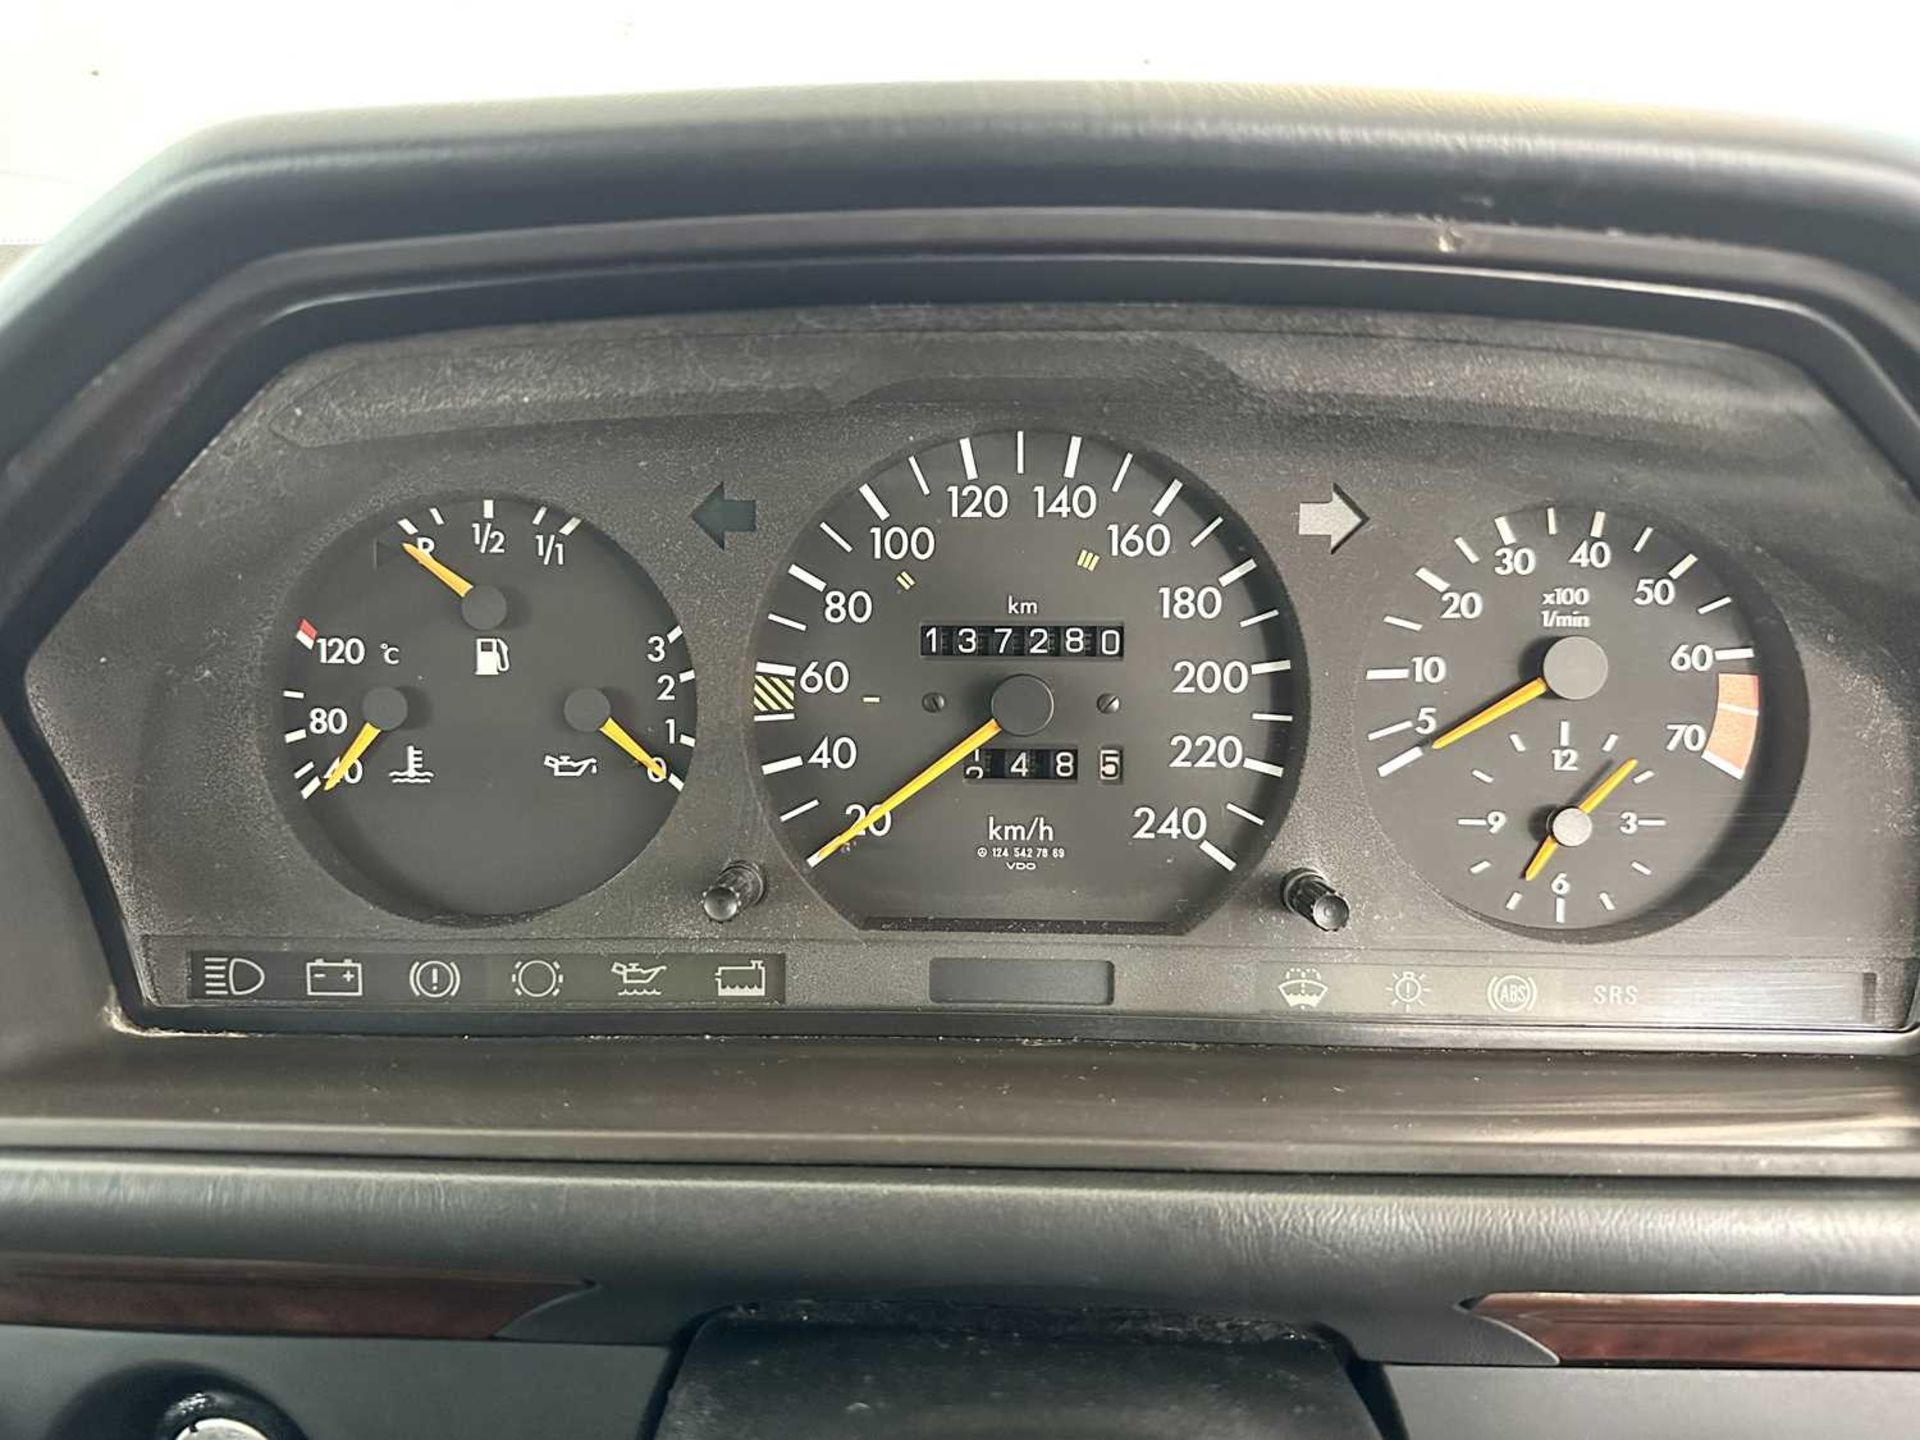 1993 Mercedes-Benz 200E - Image 31 of 32